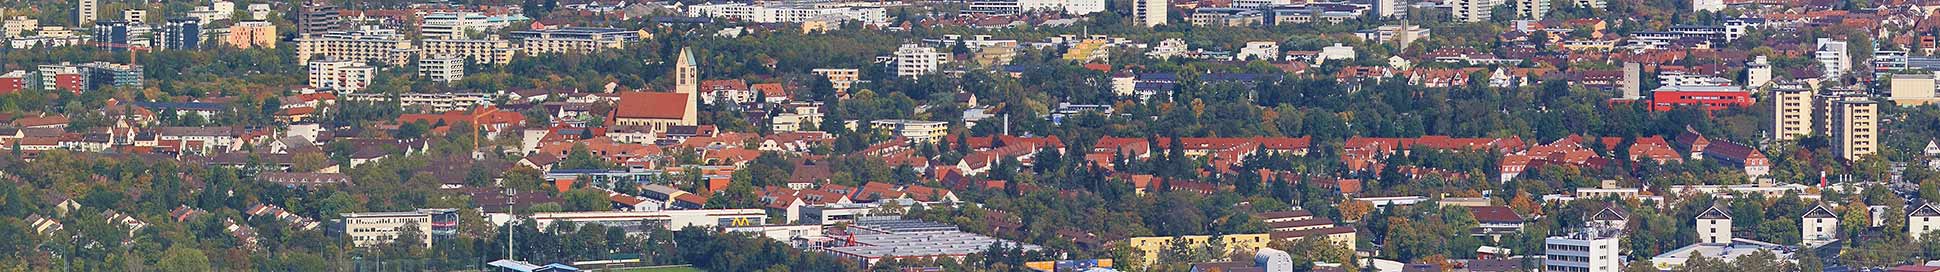 Immobilienmakler Haslach Freiburg Panorama